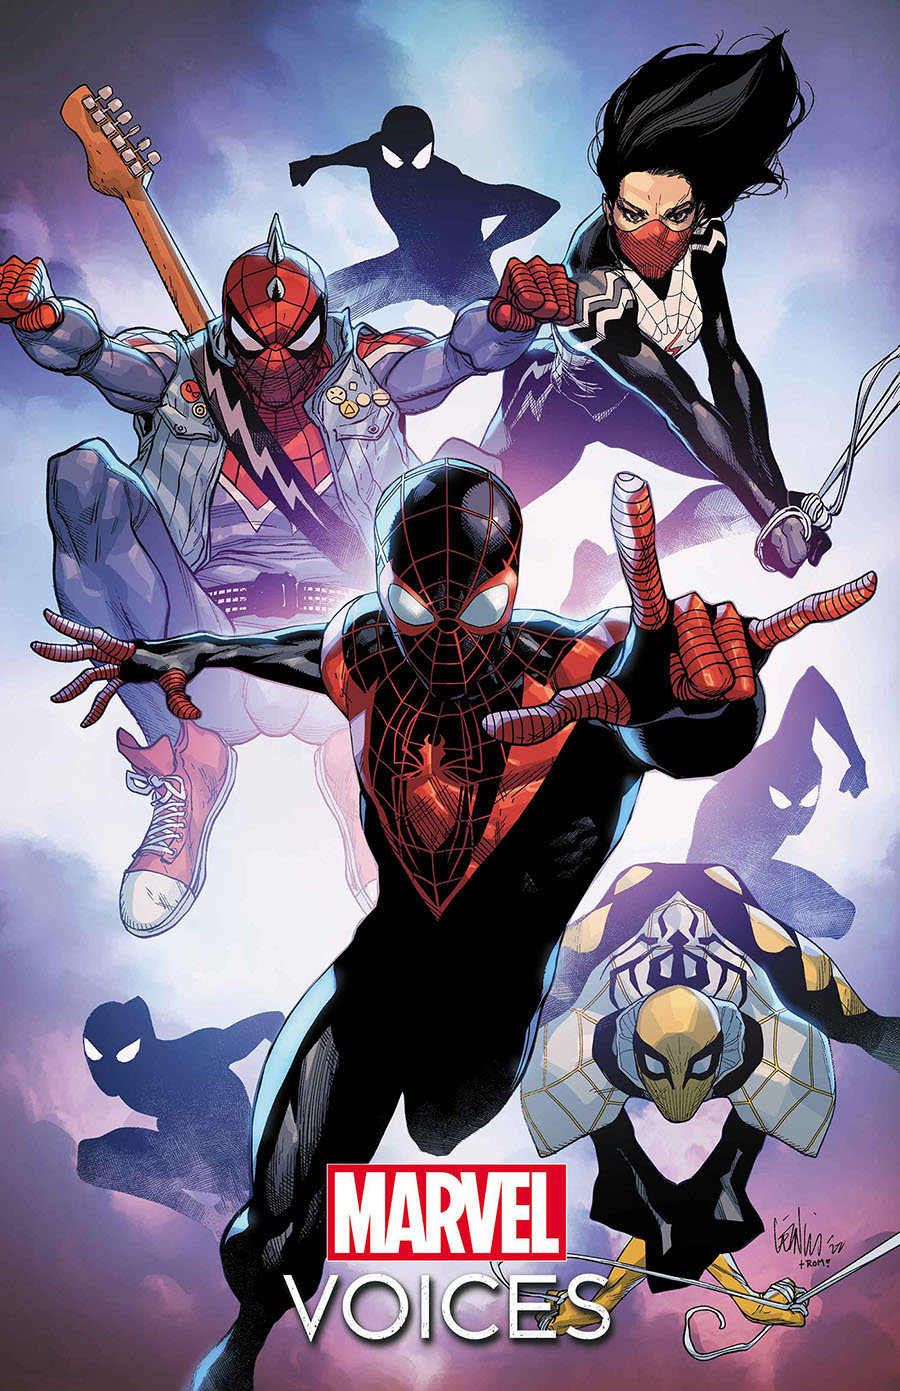 Marvel Voices: Spider-Verse